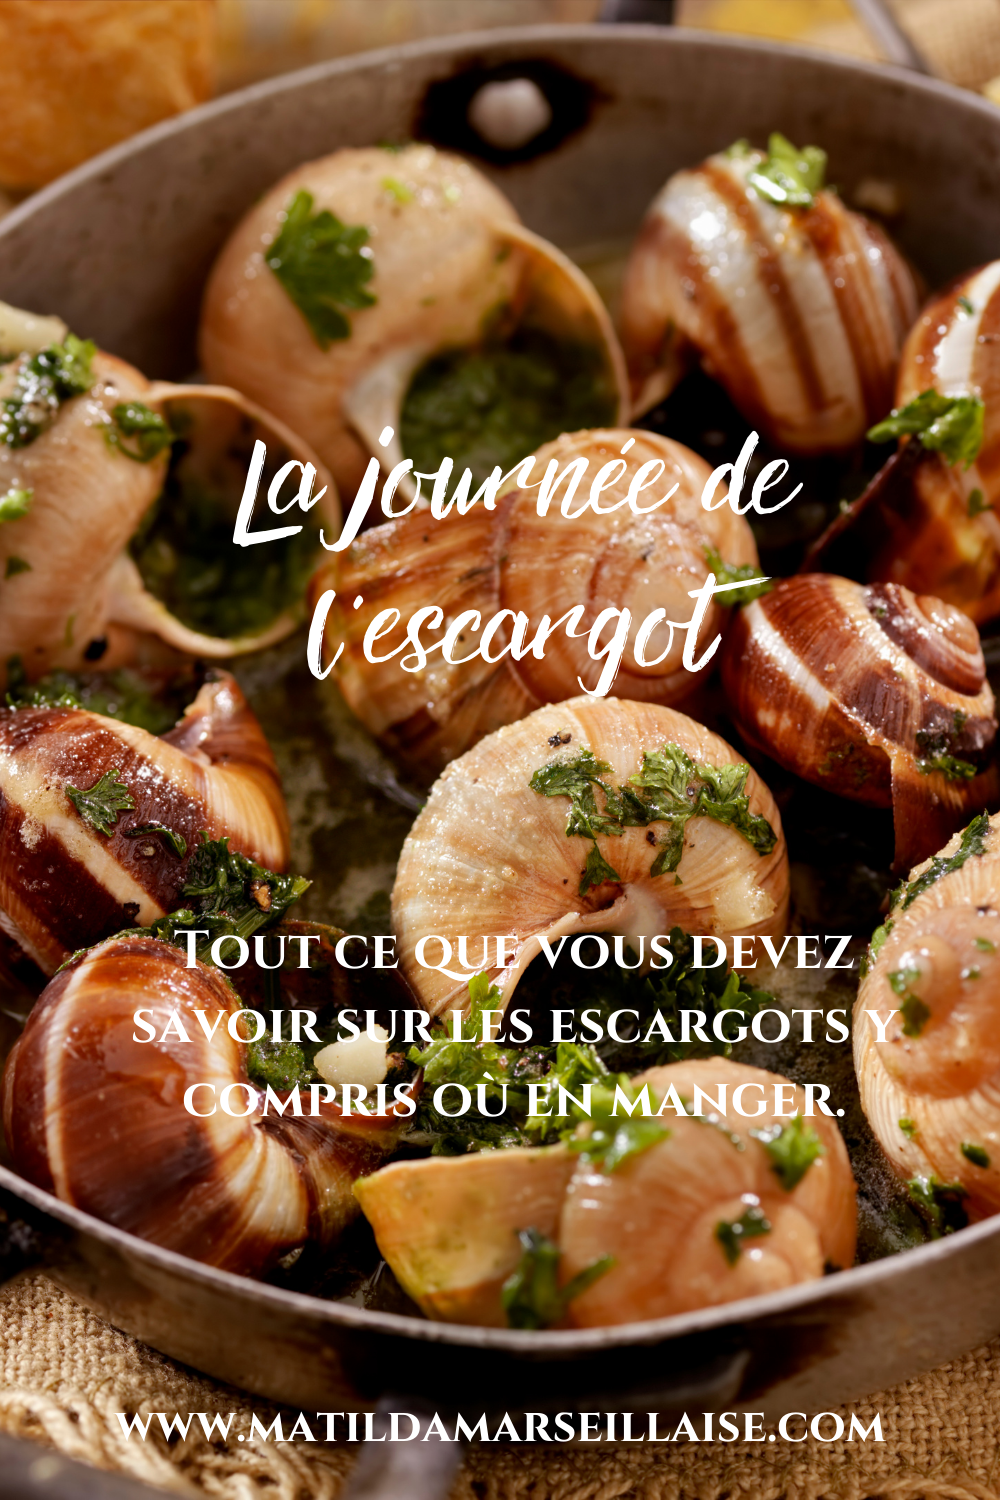 La journée nationale de l’escargot : tout ce qu’il faut savoir sur le plat français   